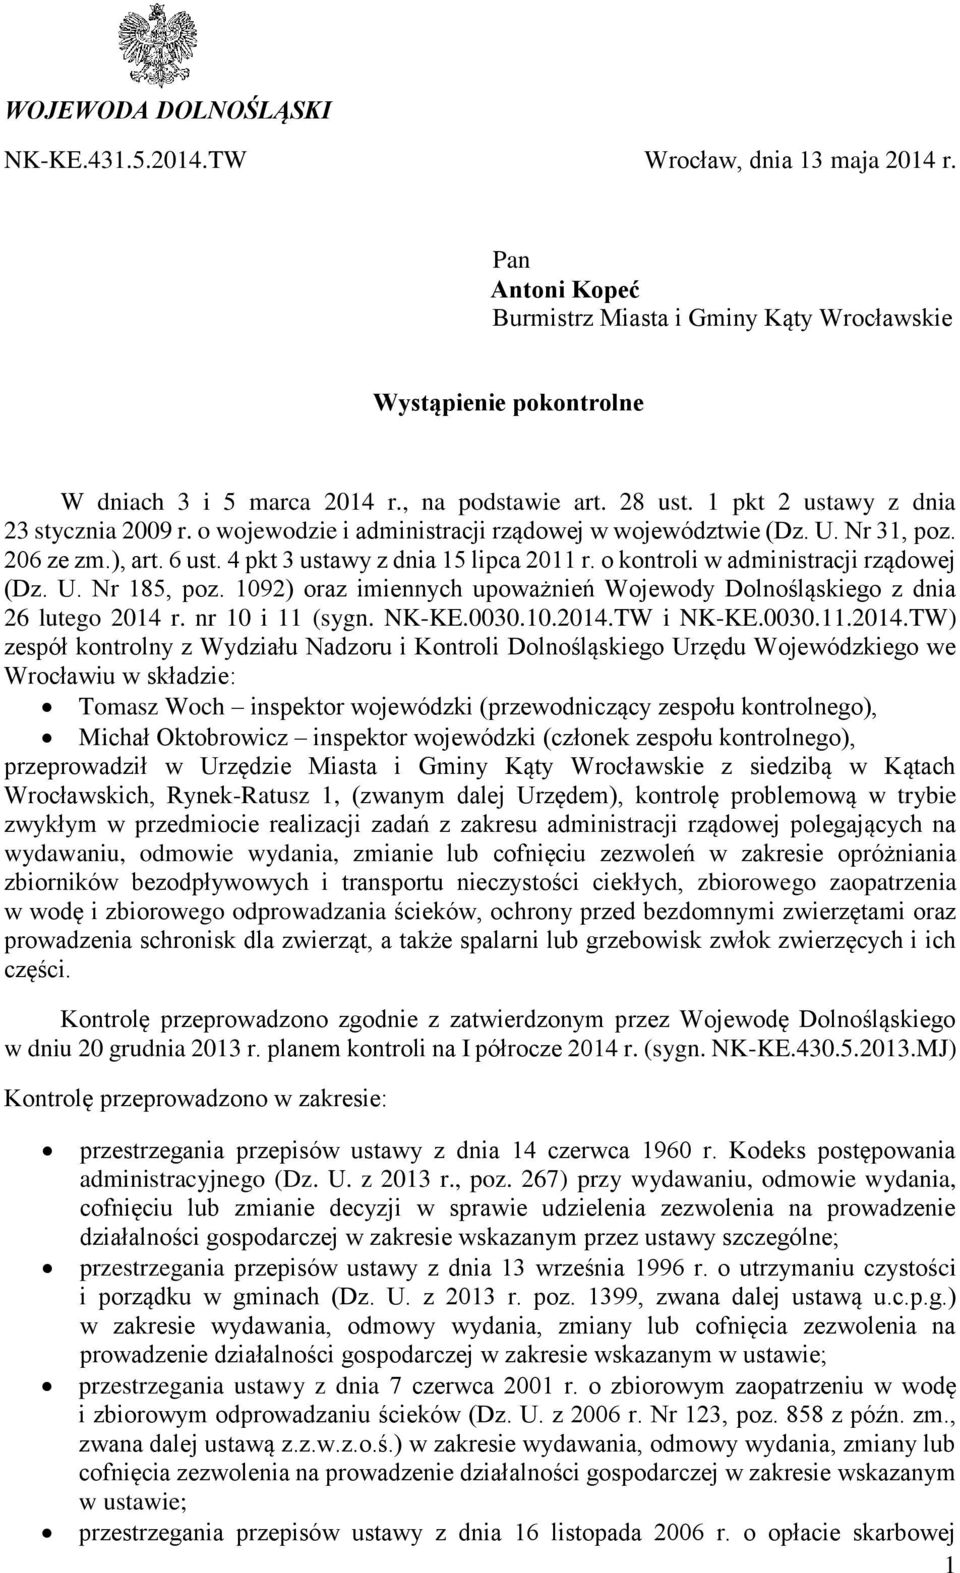 4 pkt 3 ustawy z dnia 15 lipca 2011 r. o kontroli w administracji rządowej (Dz. U. Nr 185, poz. 1092) oraz imiennych upoważnień Wojewody Dolnośląskiego z dnia 26 lutego 2014 r. nr 10 i 11 (sygn.